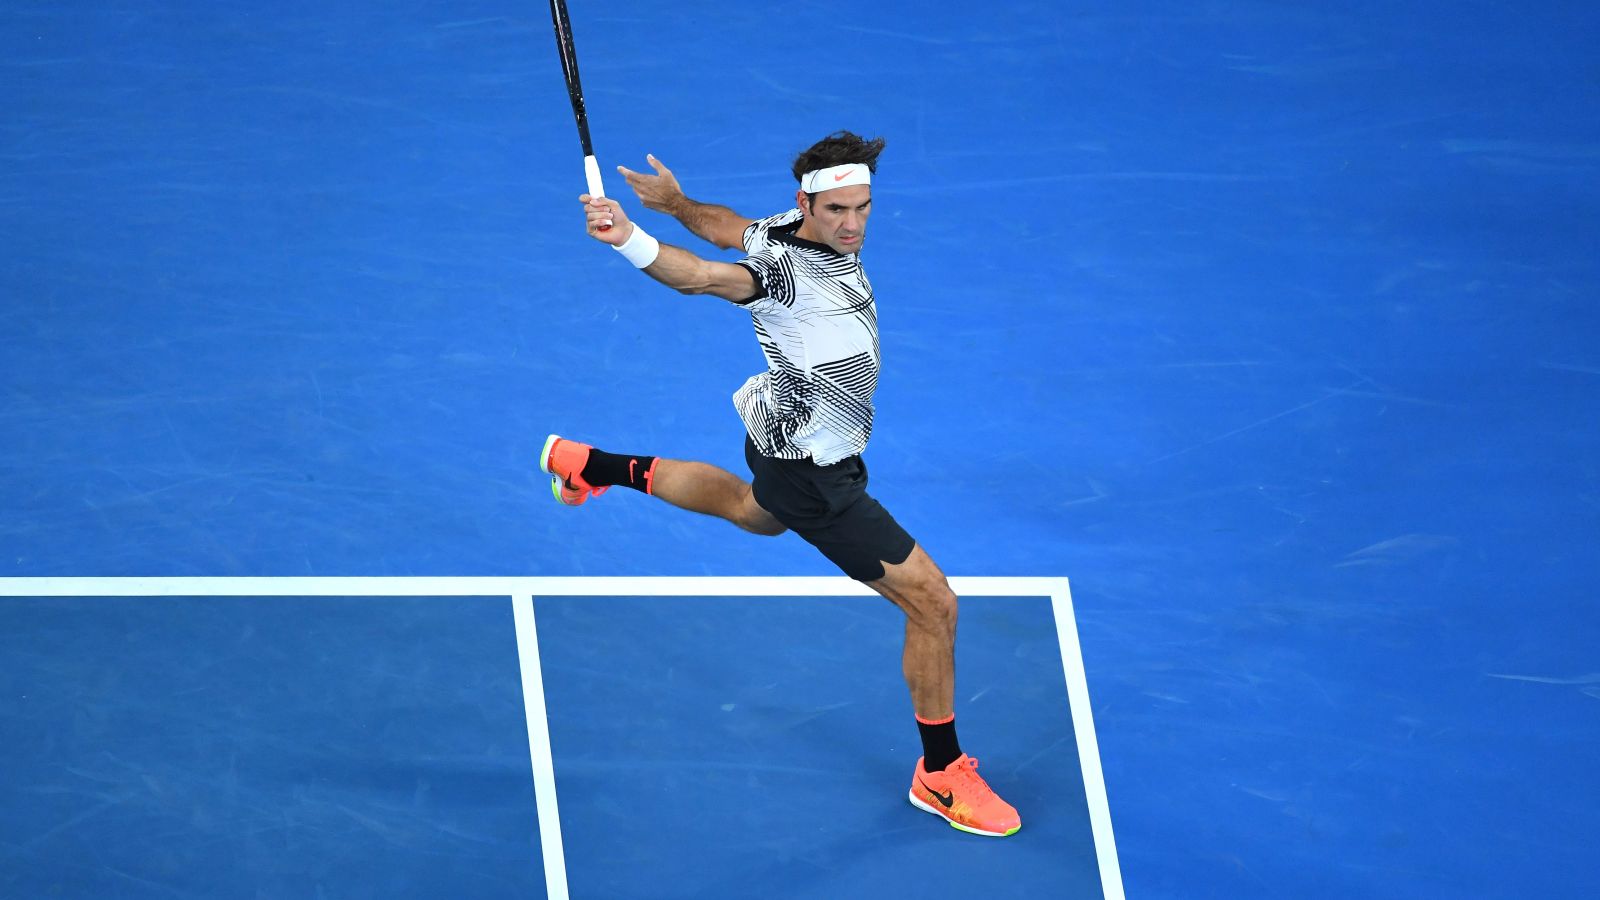 El retorno de Su Majestad: Federer podría alcanzar nuevamente la cima del ránking si gana en Cincinnati